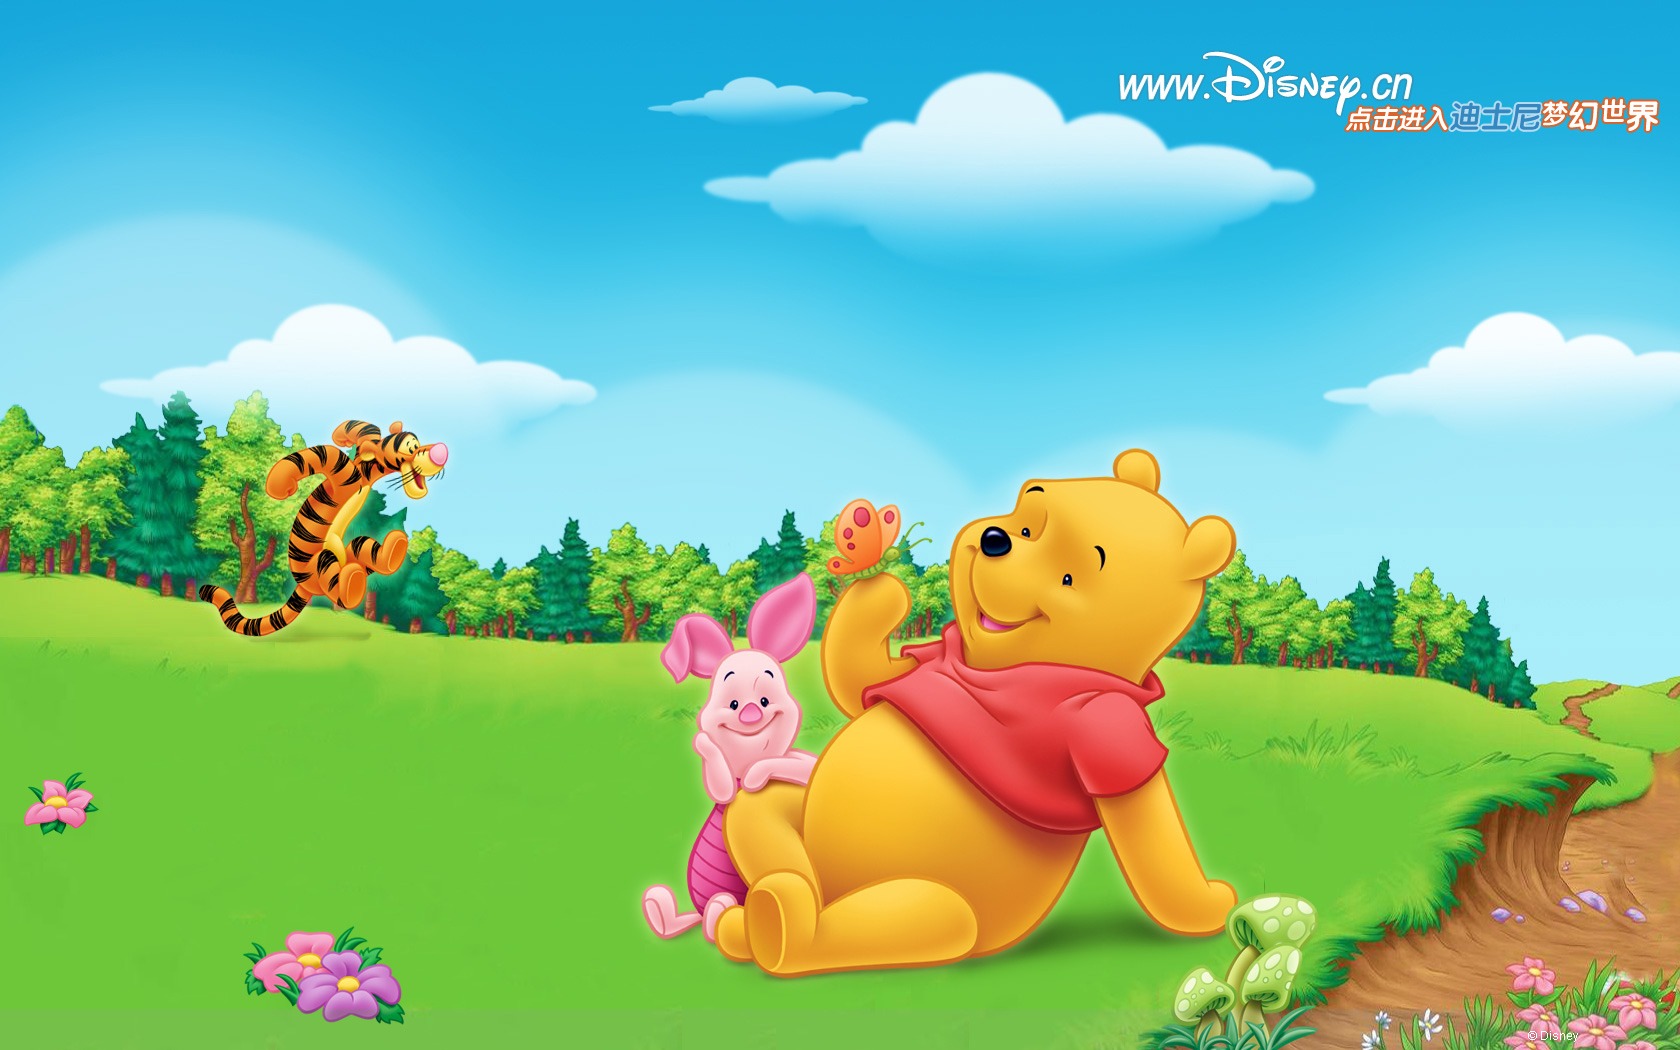 Walt Disney Cartoon Winnie The Pooh Wallpaper - HD Wallpaper 